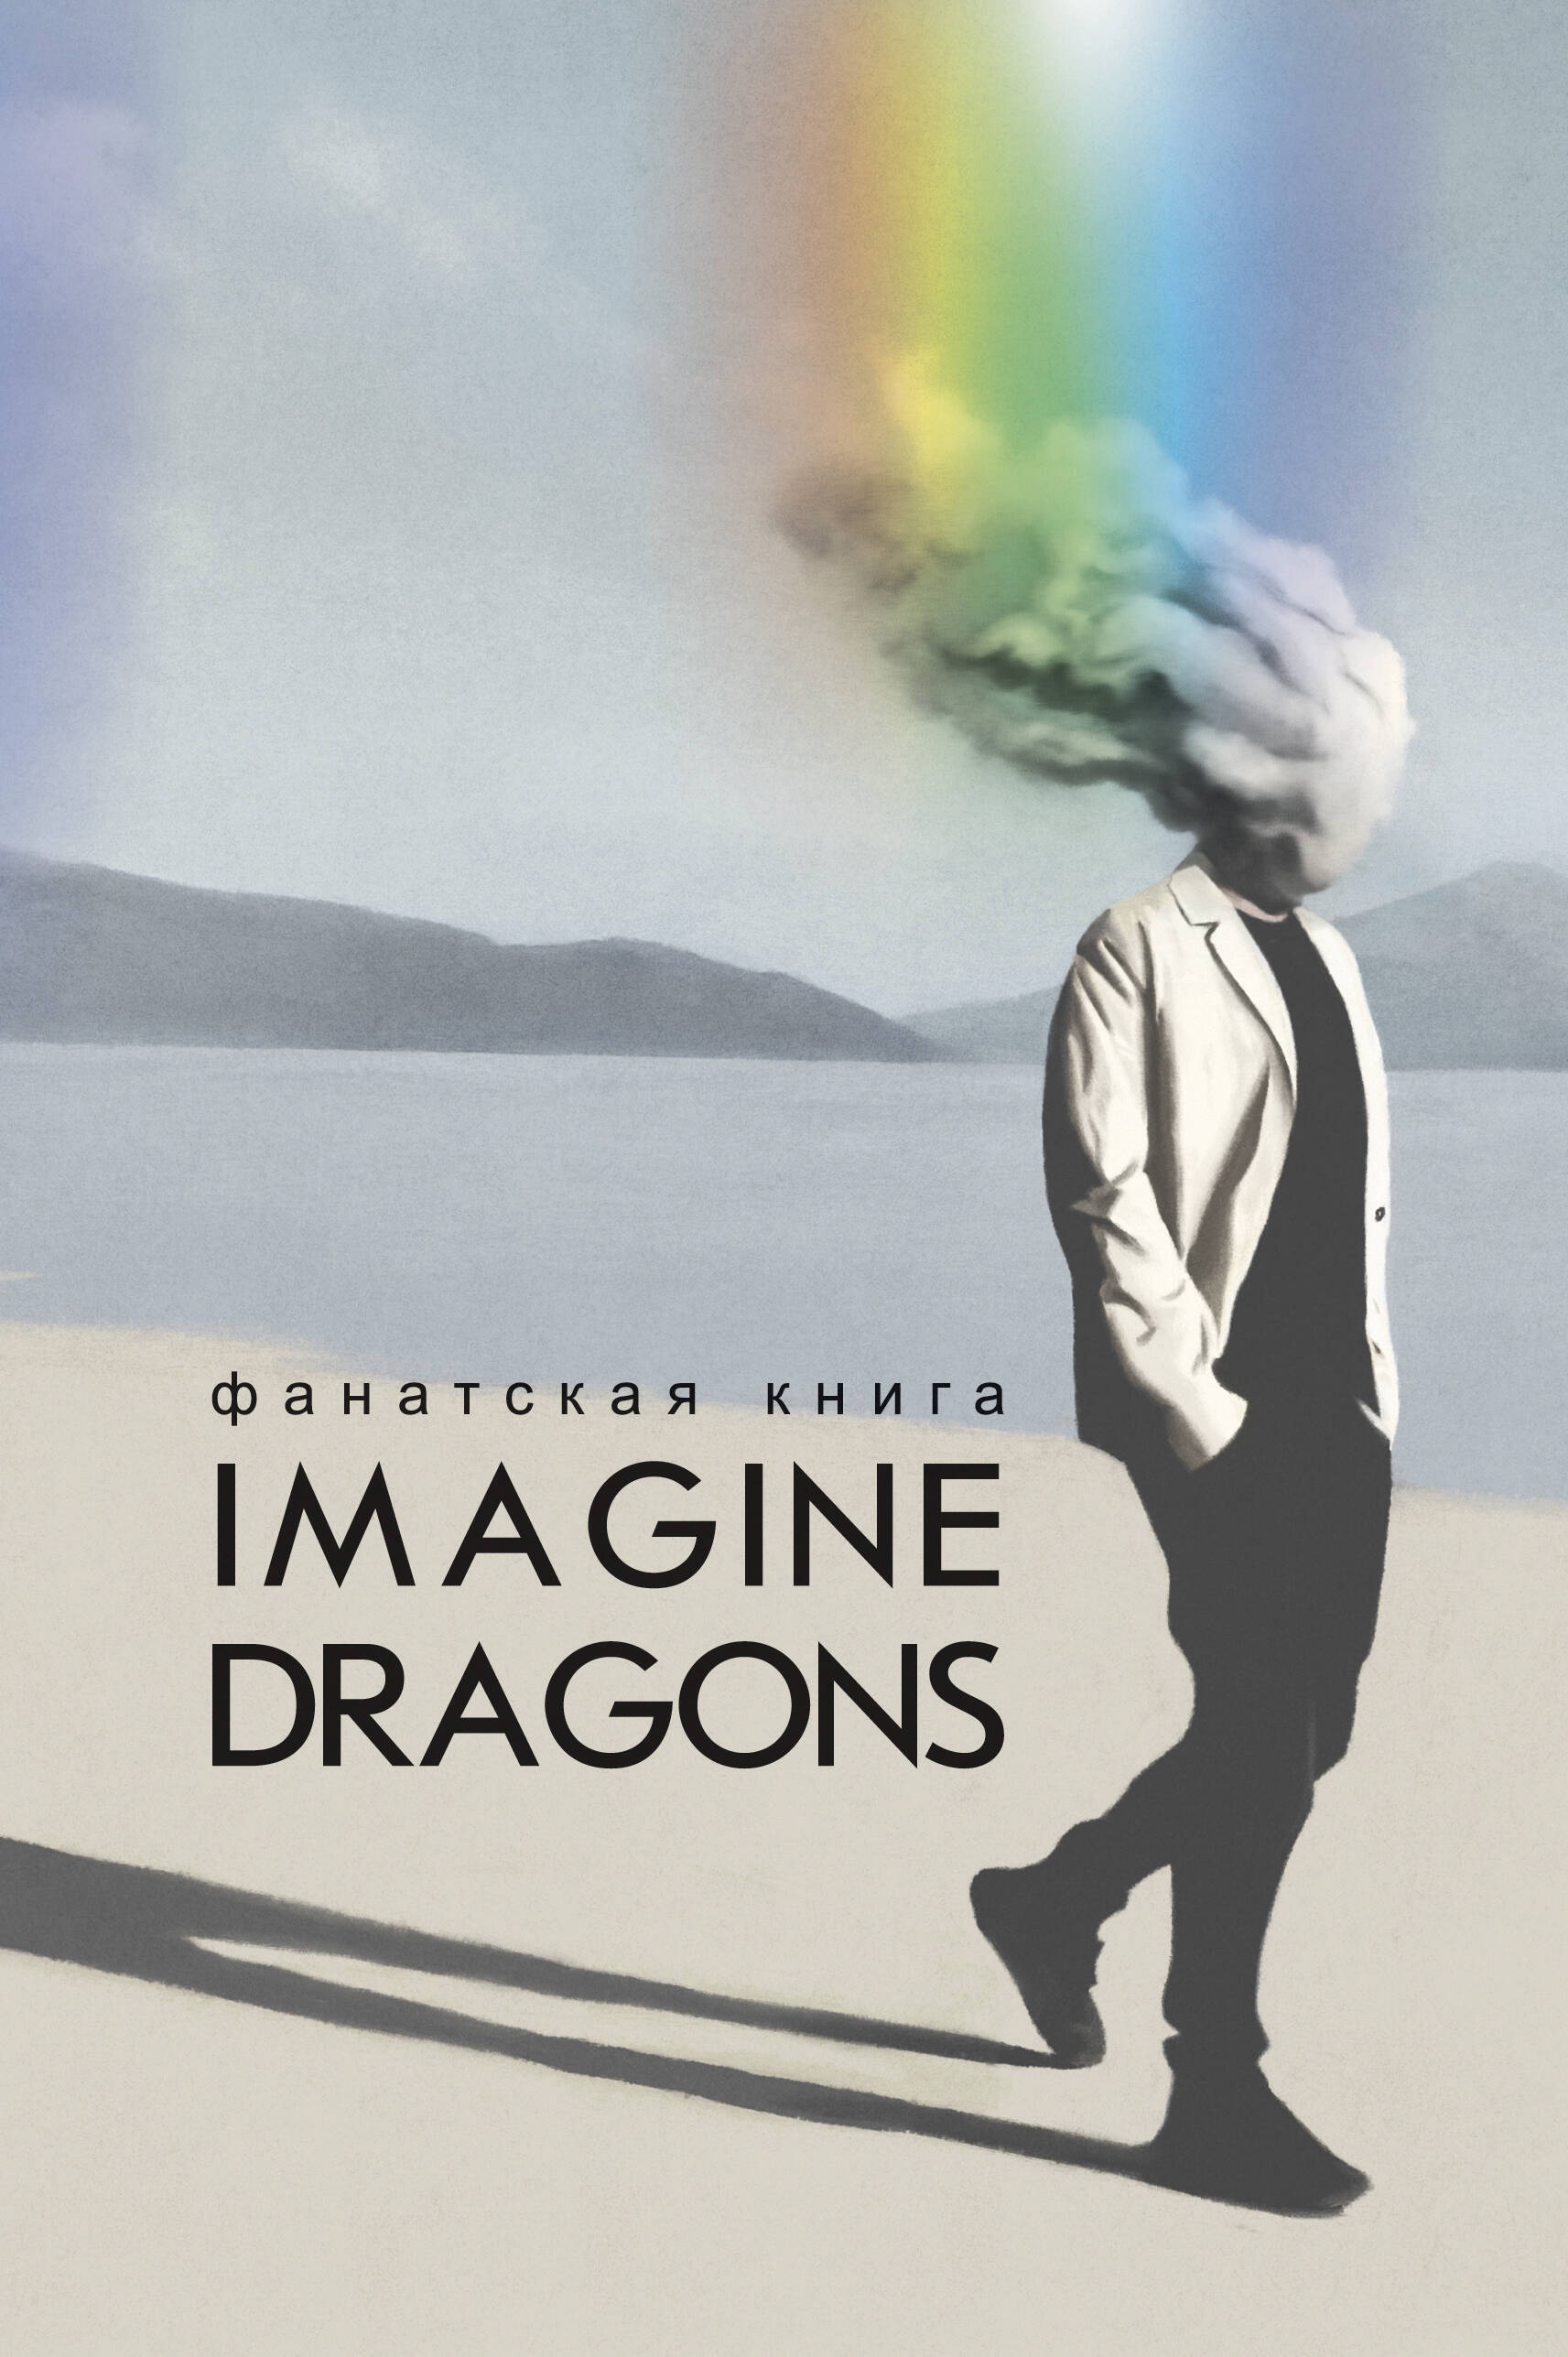 Аксенова А. Фанатская книга Imagine Dragons universal music imagine dragons mercury act 1 cd